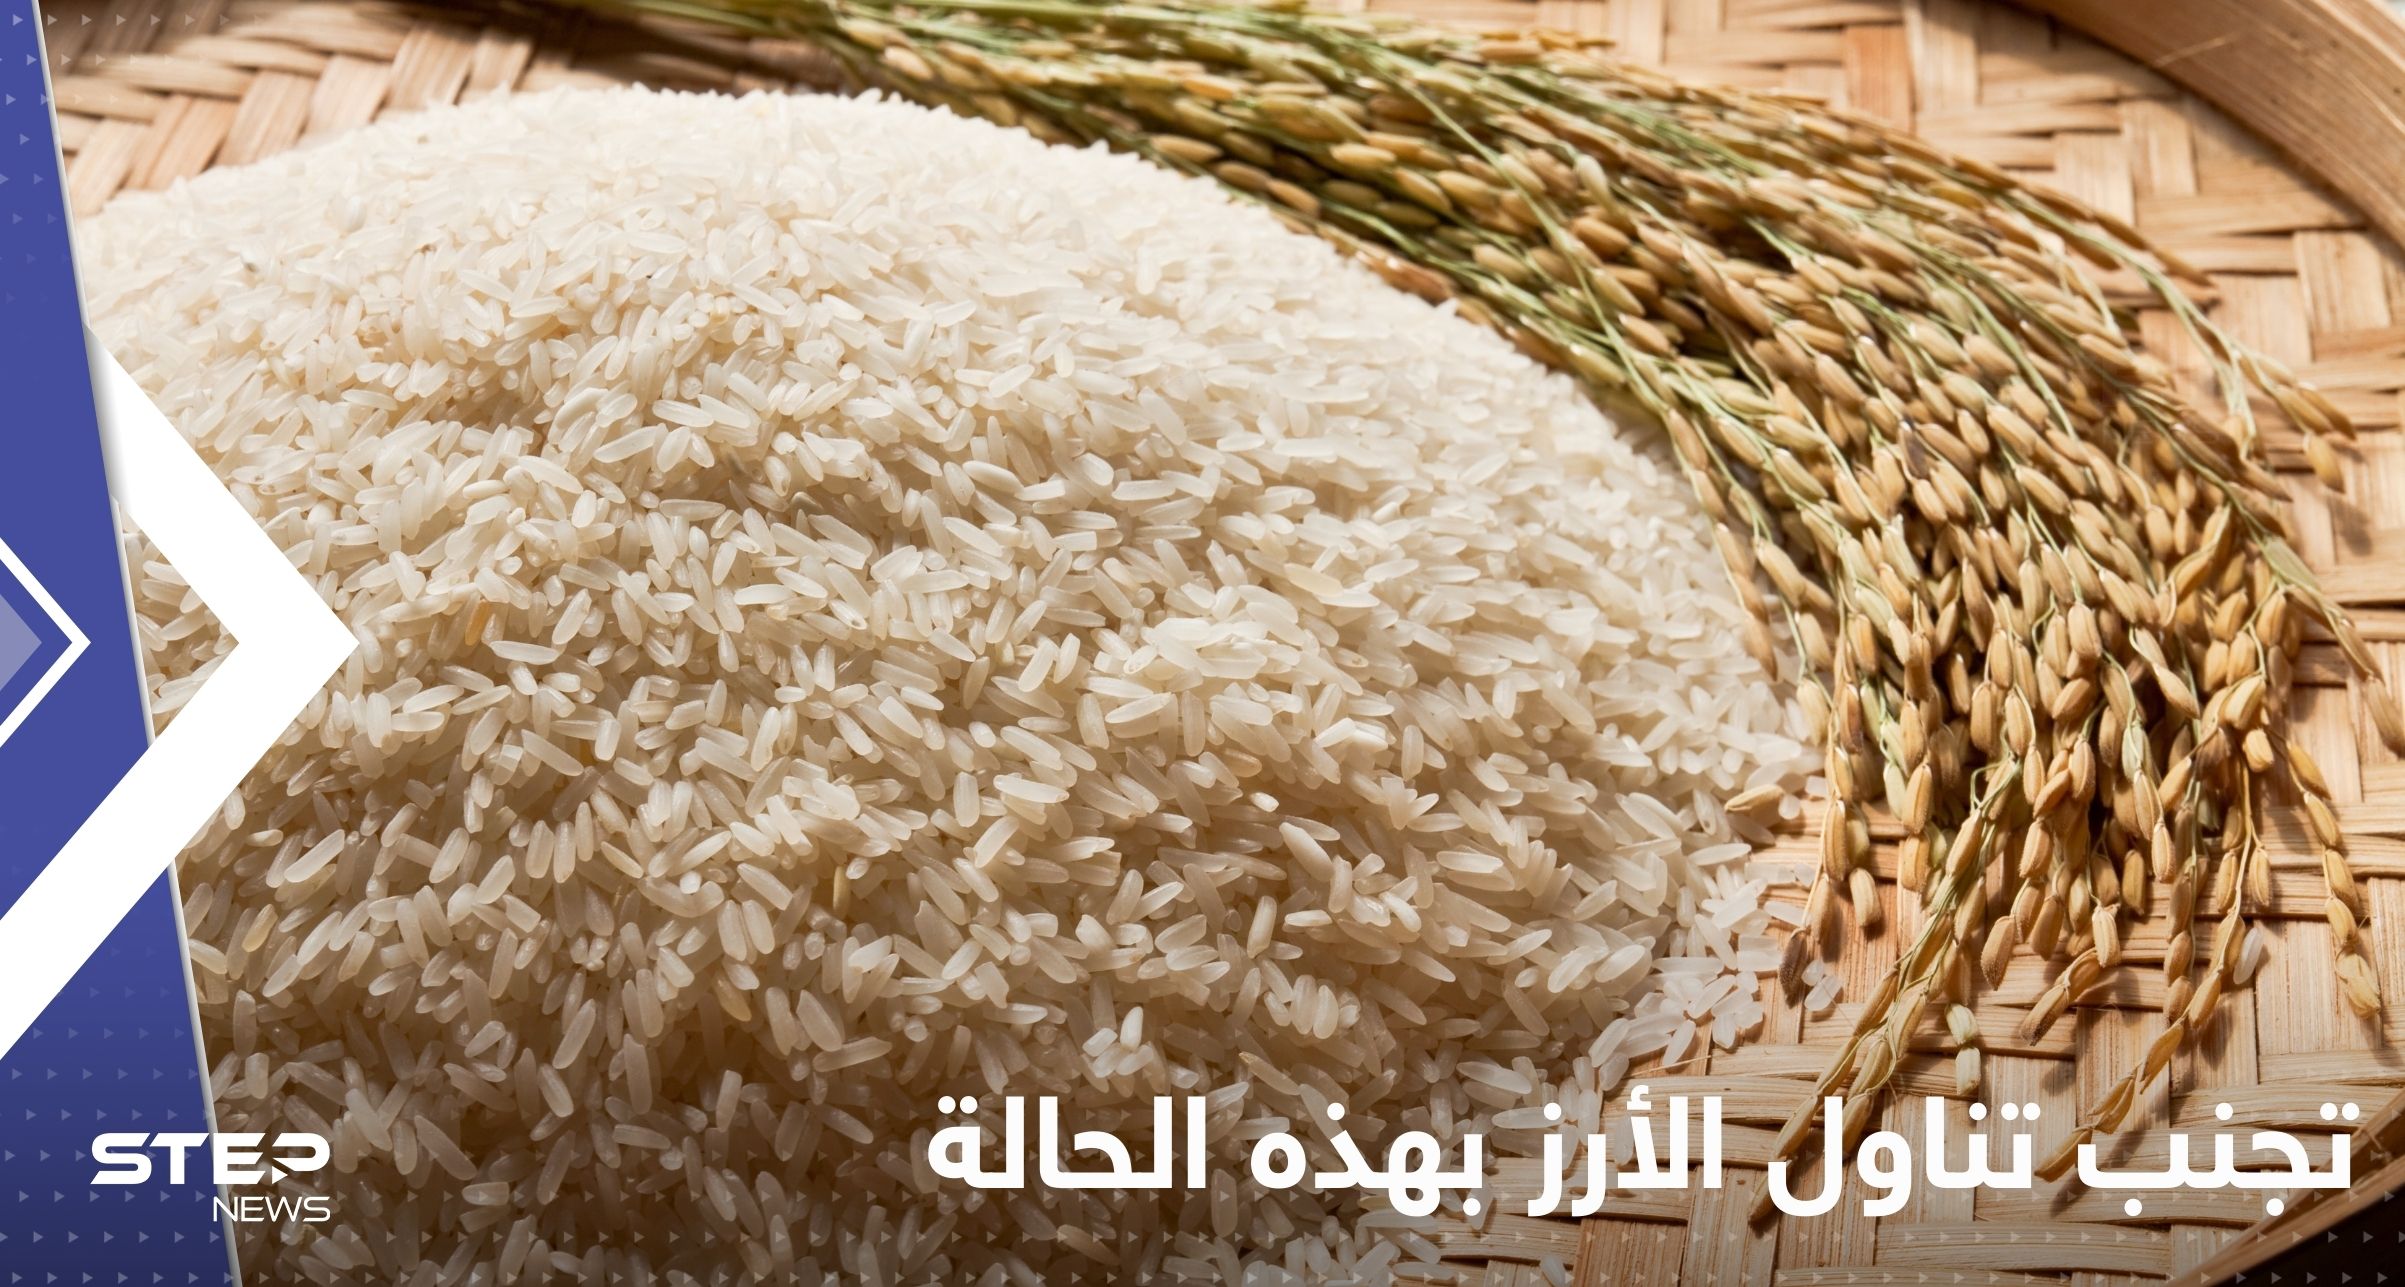 تجنب تناول الأرز بهذه الحالة قد يؤدي للإصابة بالسرطان!.. دراسة تحذر